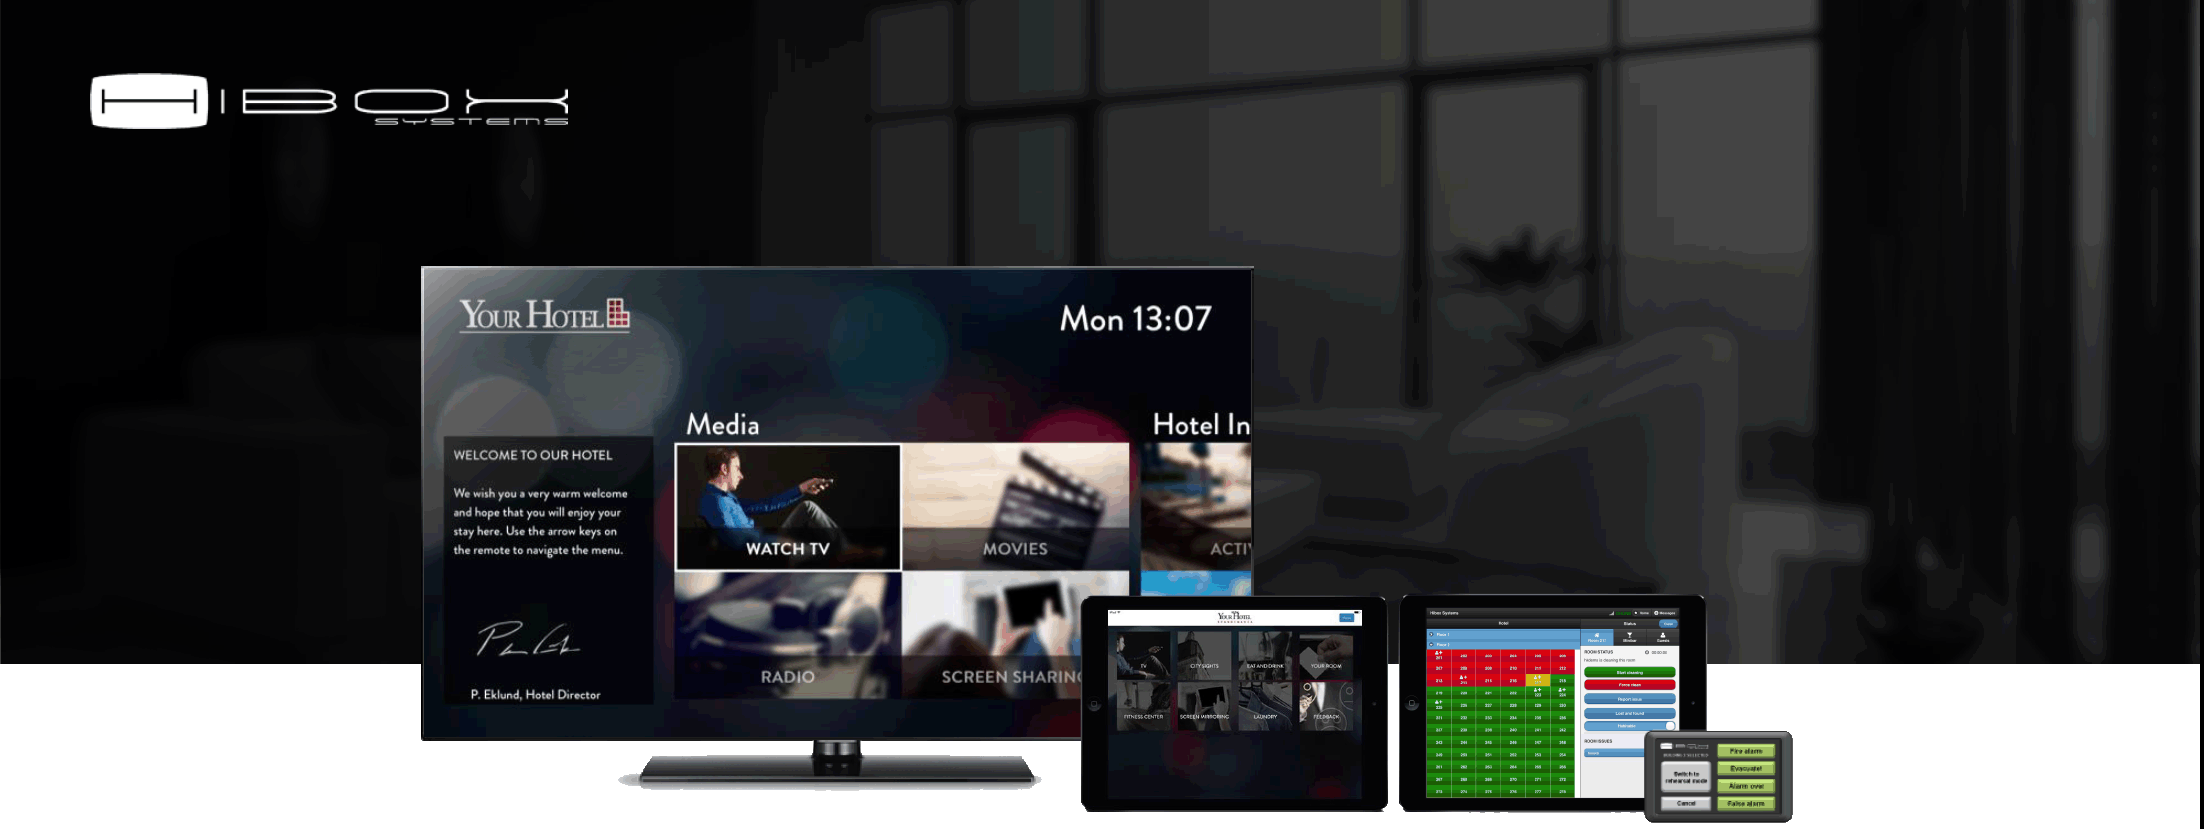 Hibox systems - интерактивная система гостиничного телевидения